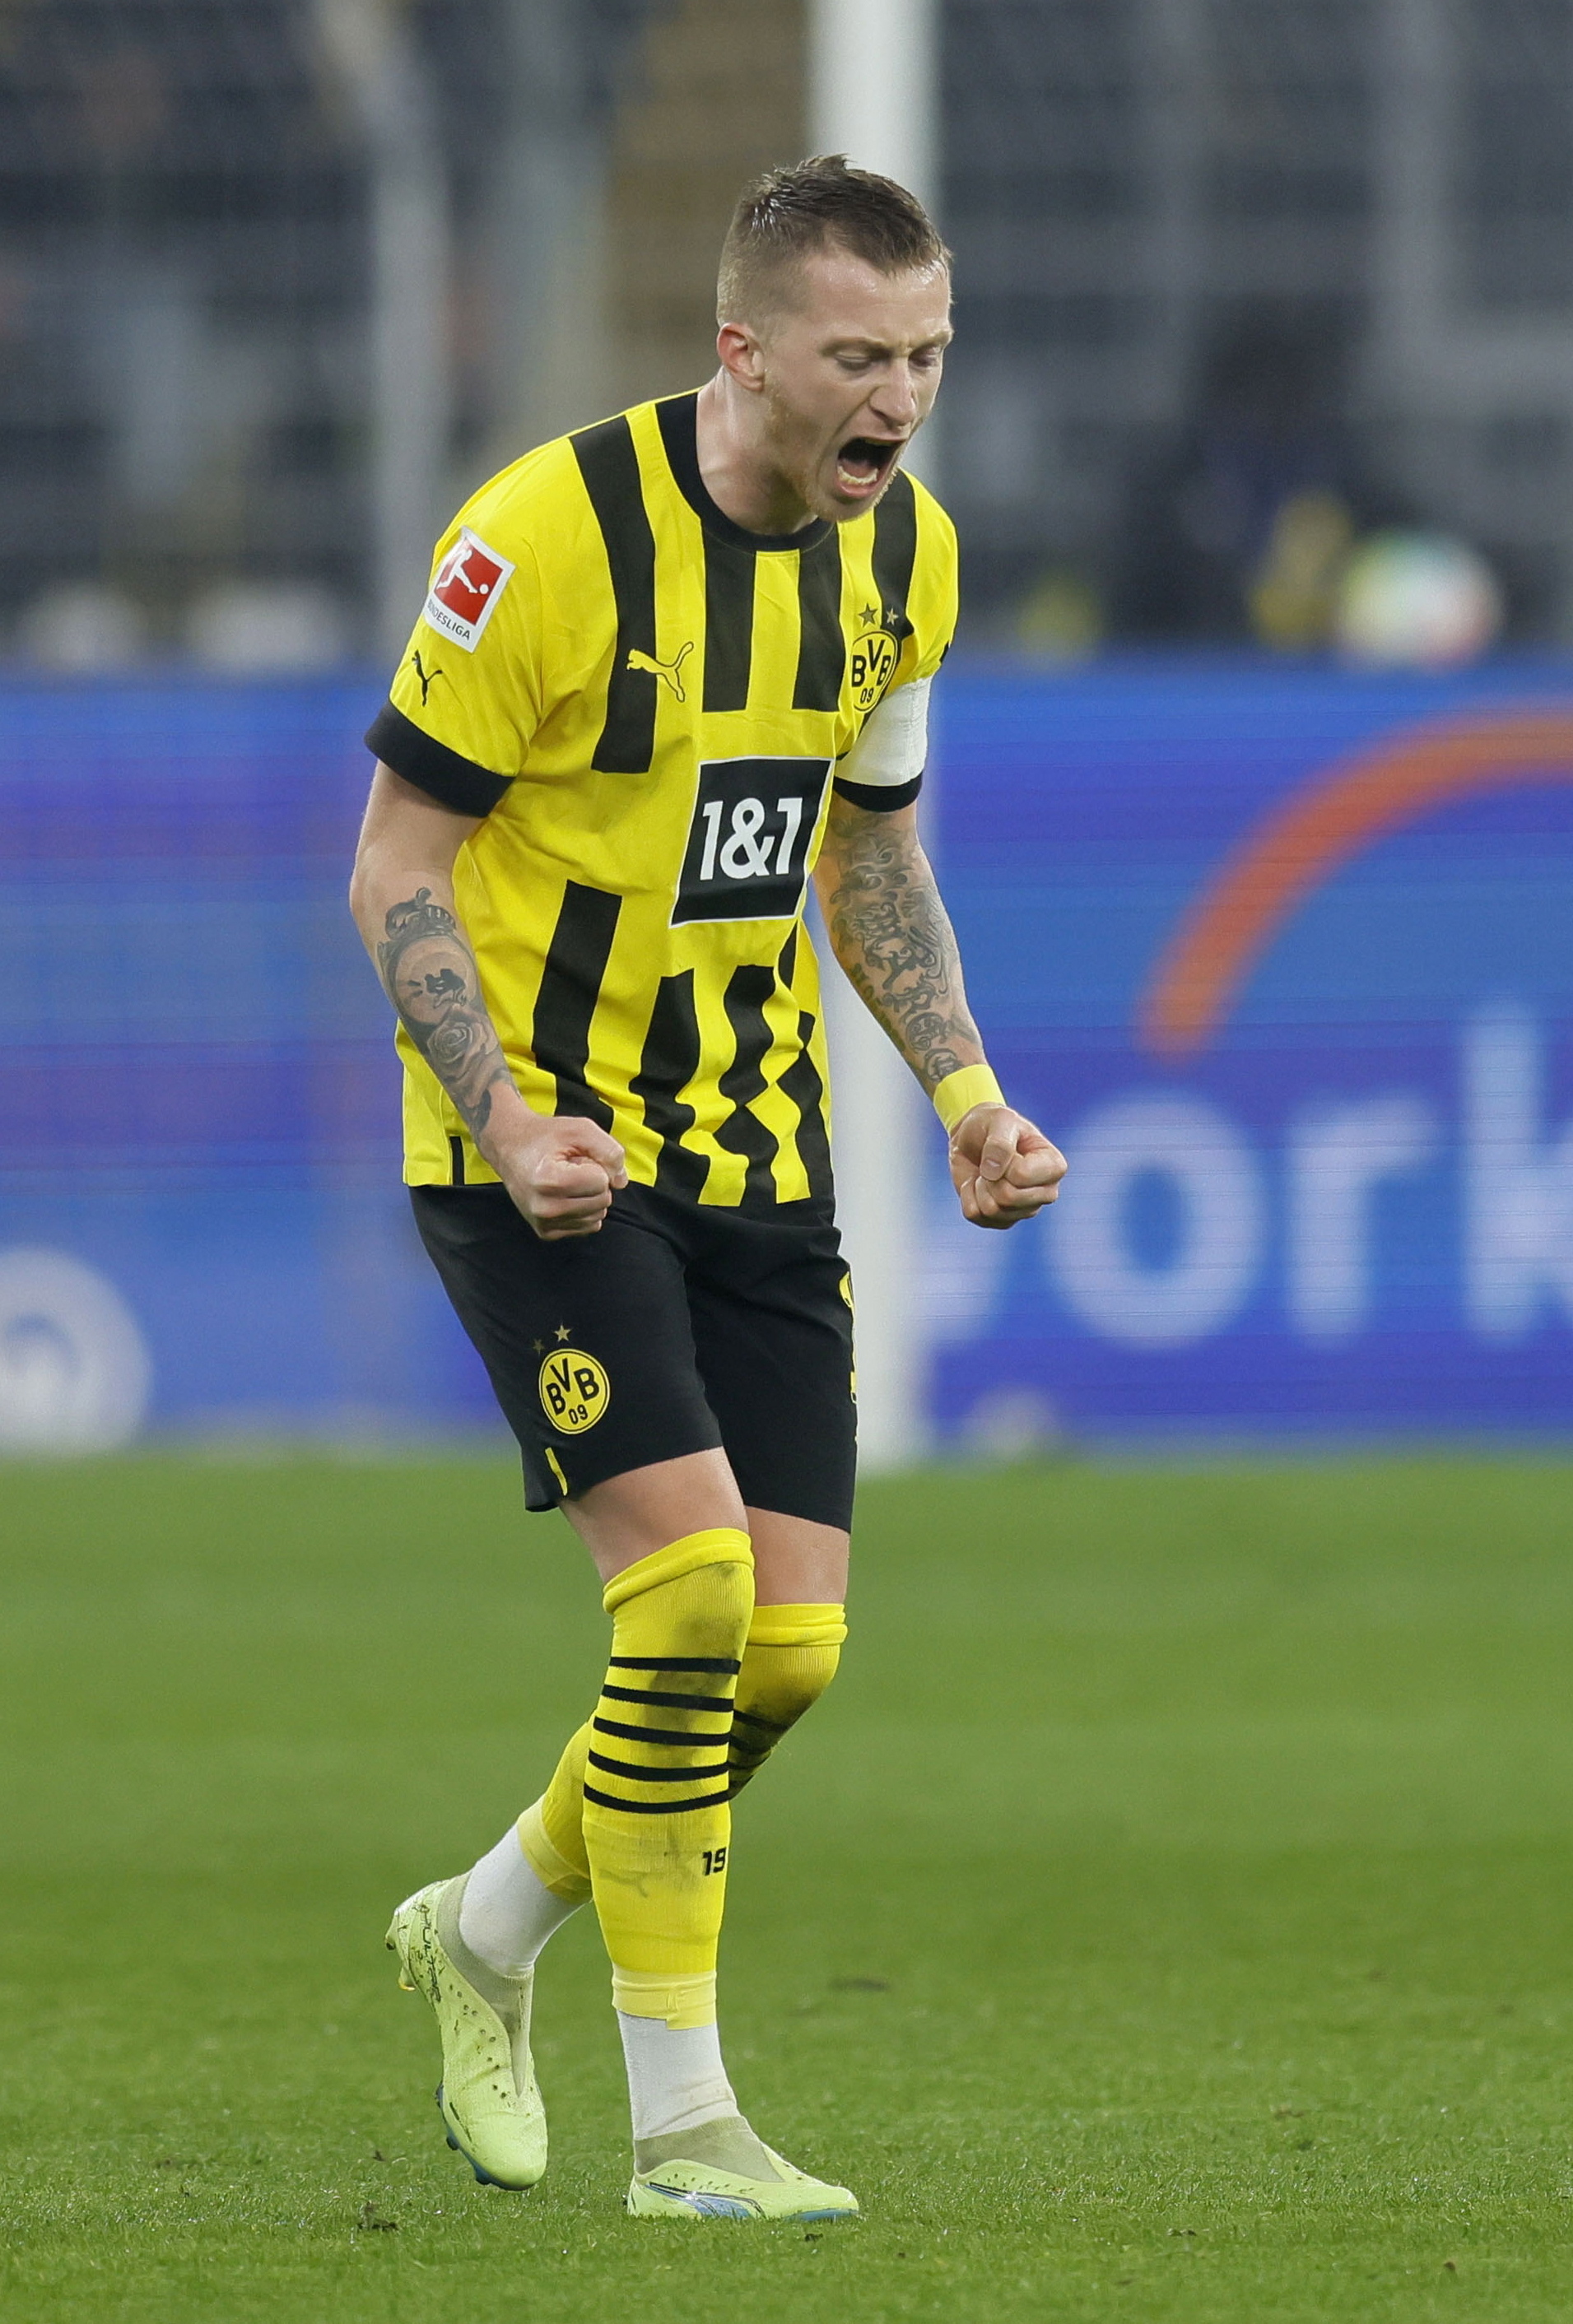 Dortmunds Marco Reus celebrates after scoring